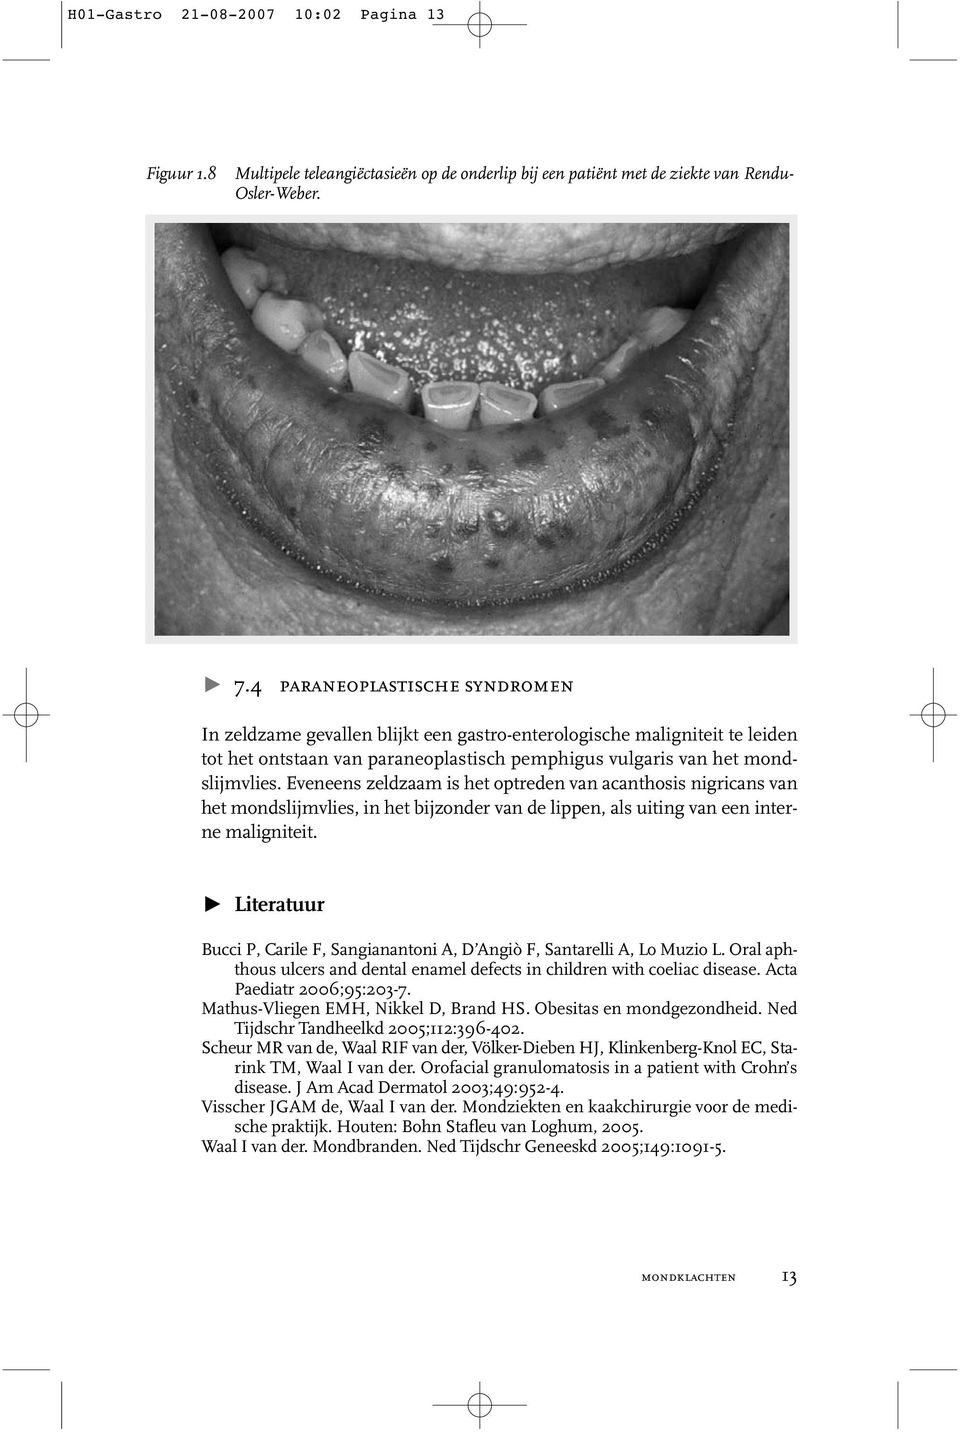 Eveneens zeldzaam is het optreden van acanthosis nigricans van het mondslijmvlies, in het bijzonder van de lippen, als uiting van een interne maligniteit.